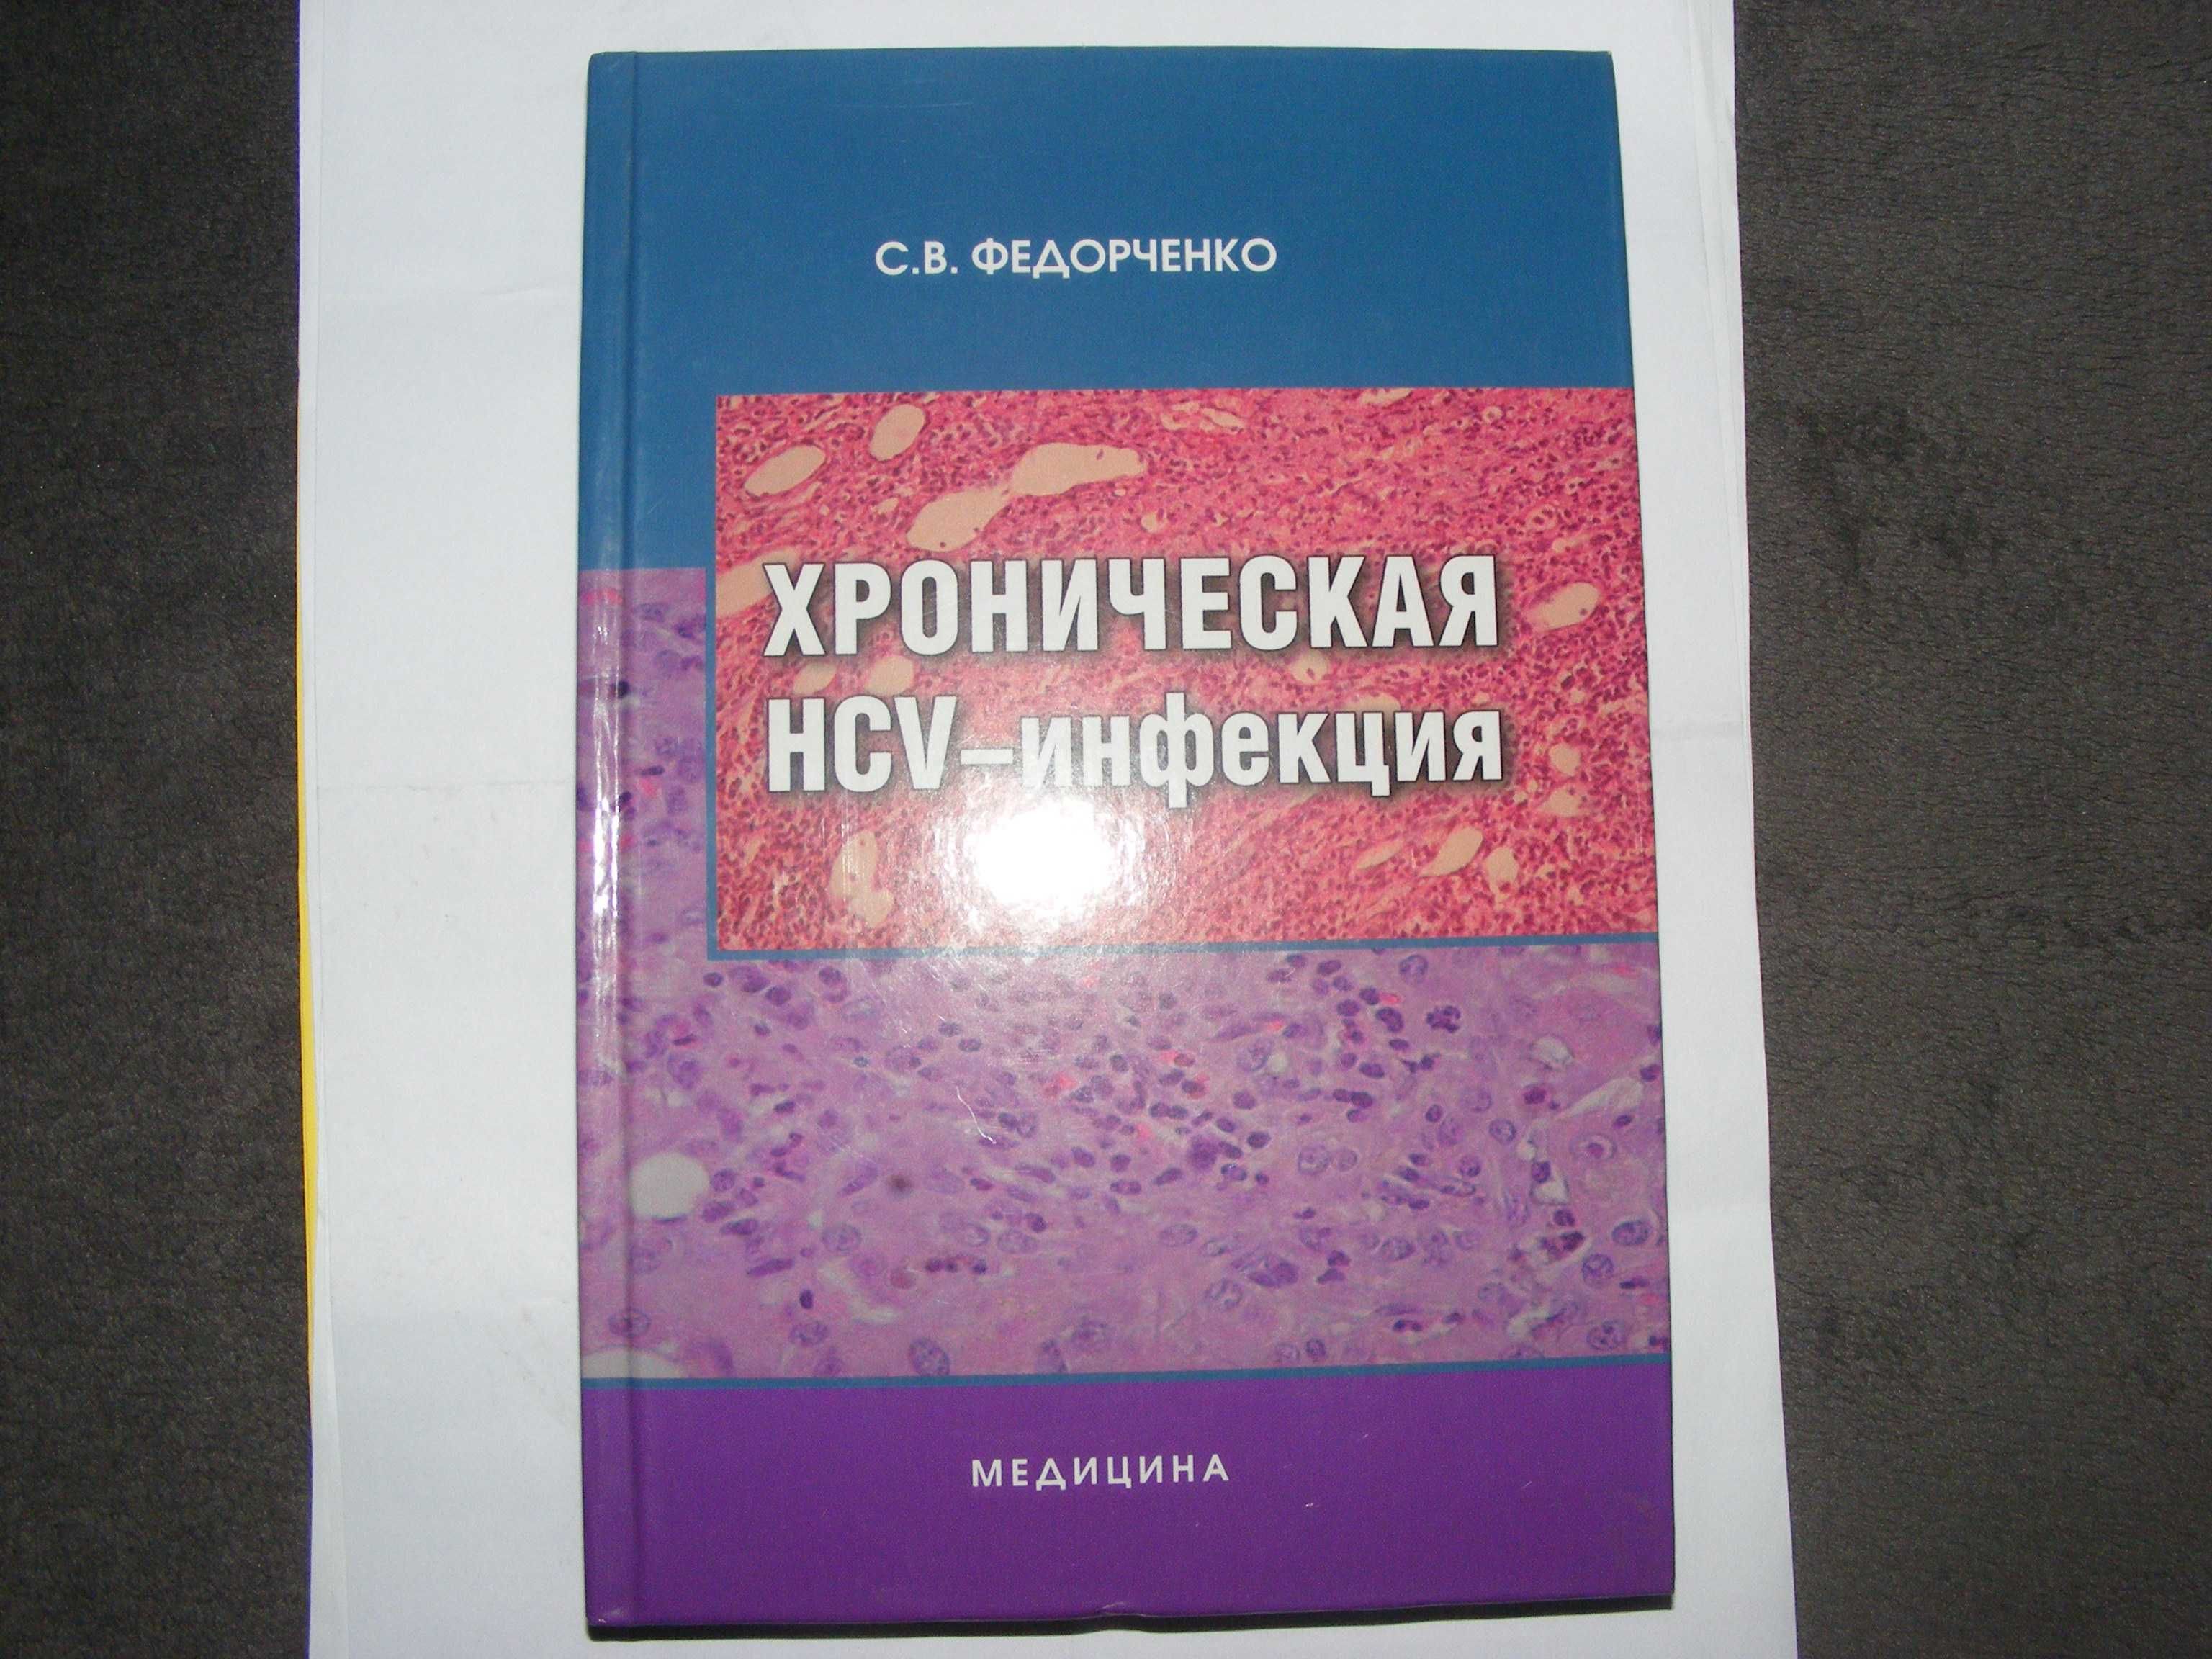 Книга Сергей Федорченко «Хроническая HCV-инфекция»